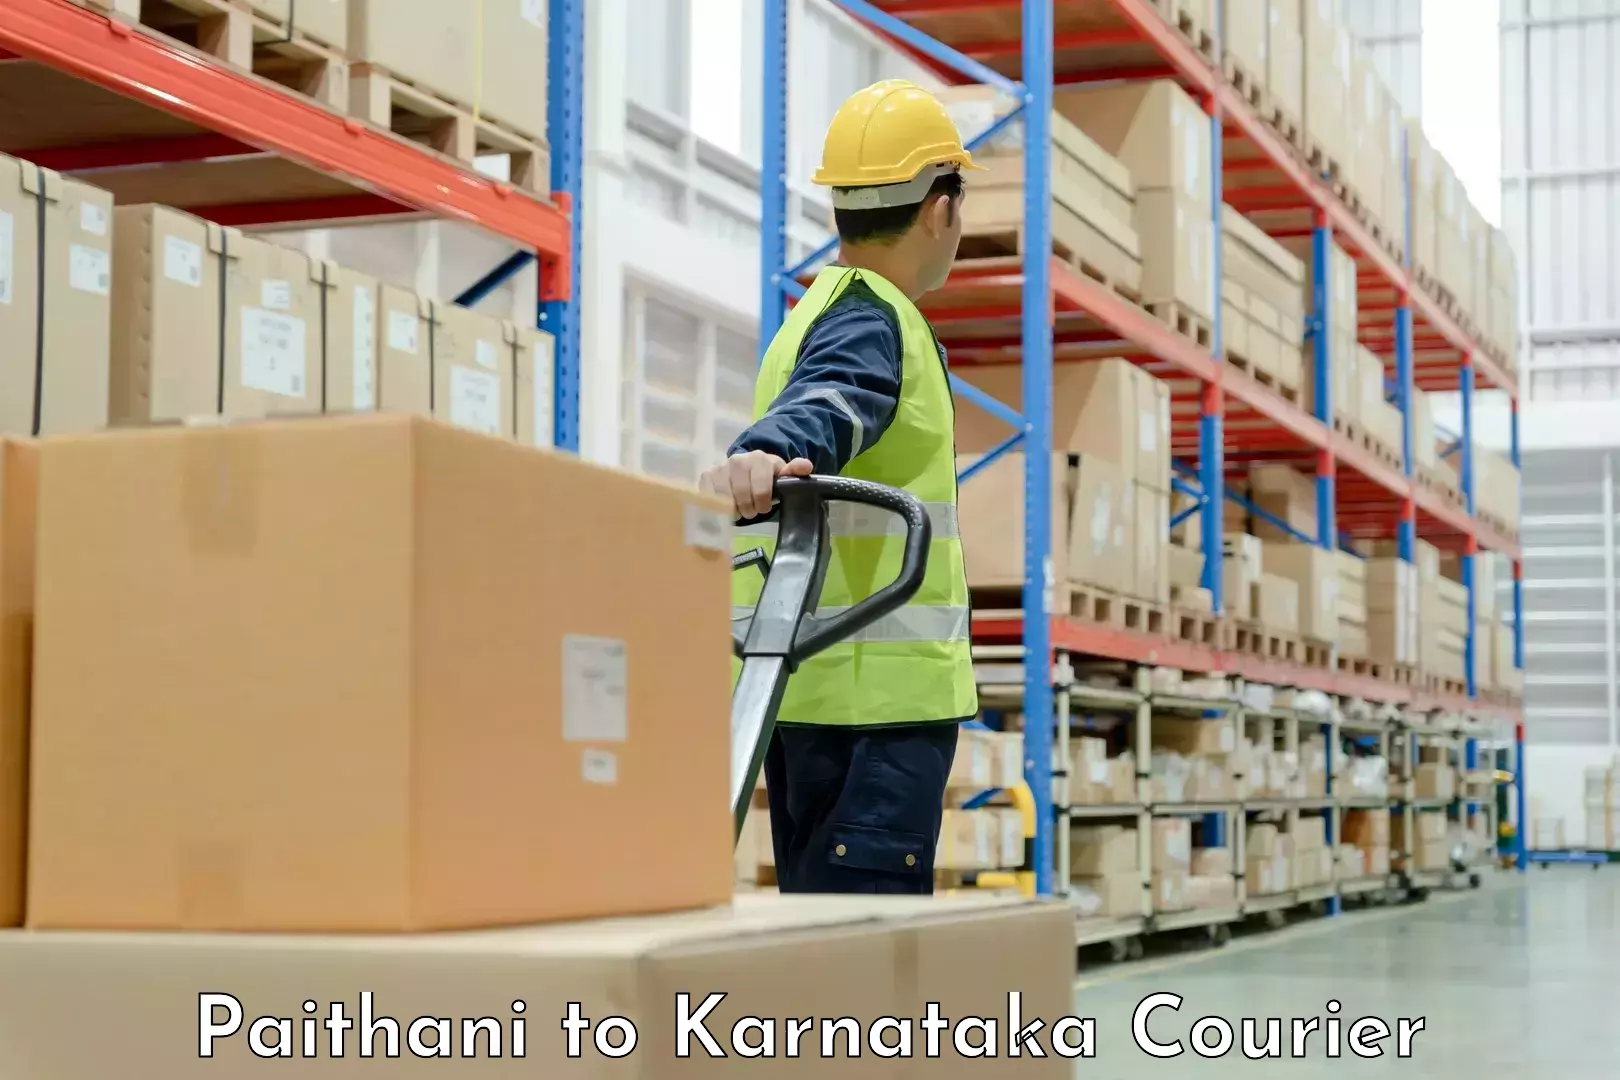 Customized moving experience Paithani to Karnataka